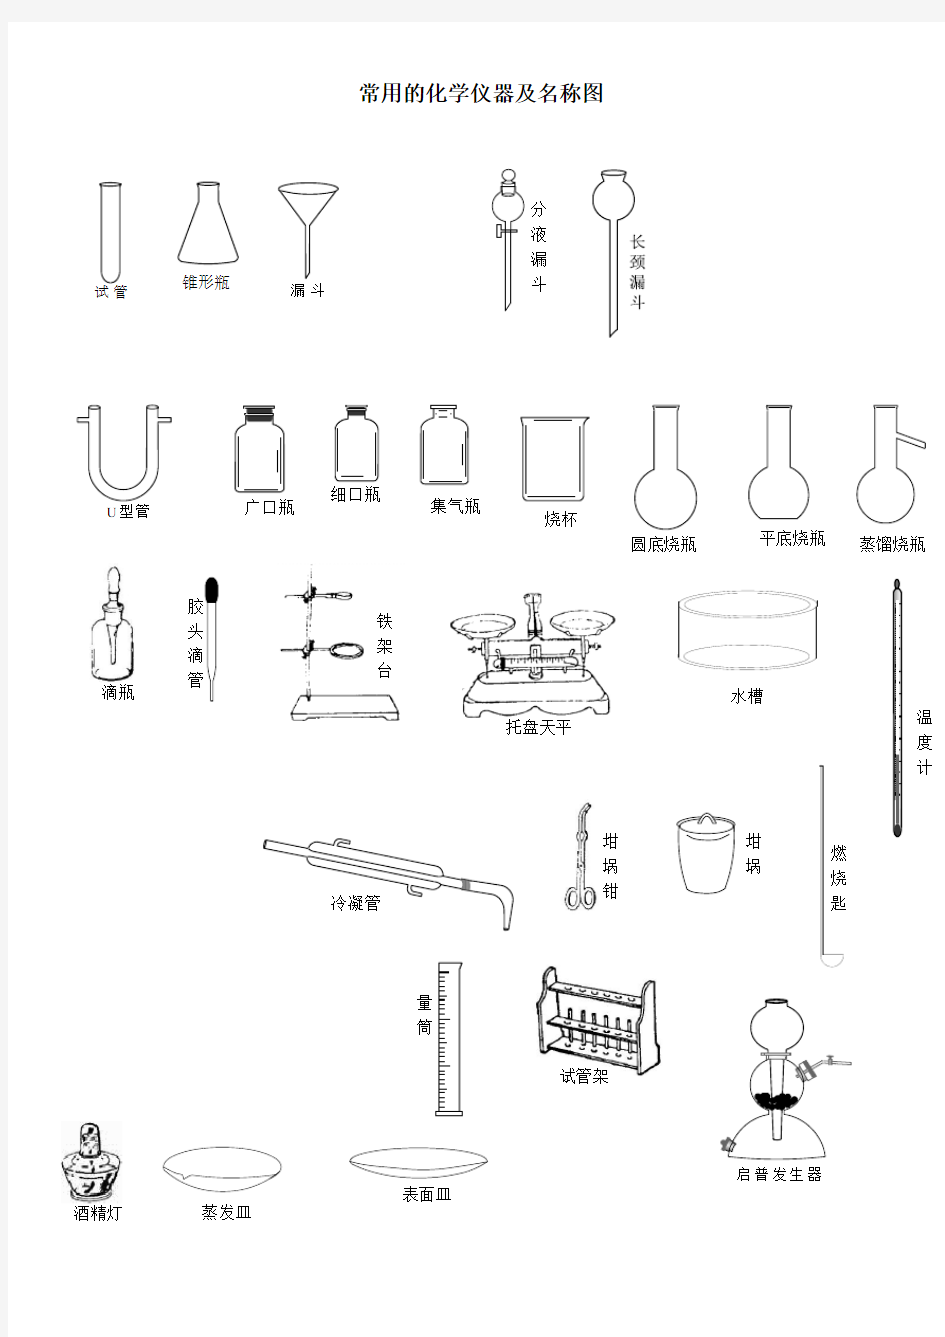 常用的化学仪器及名称图(整理)